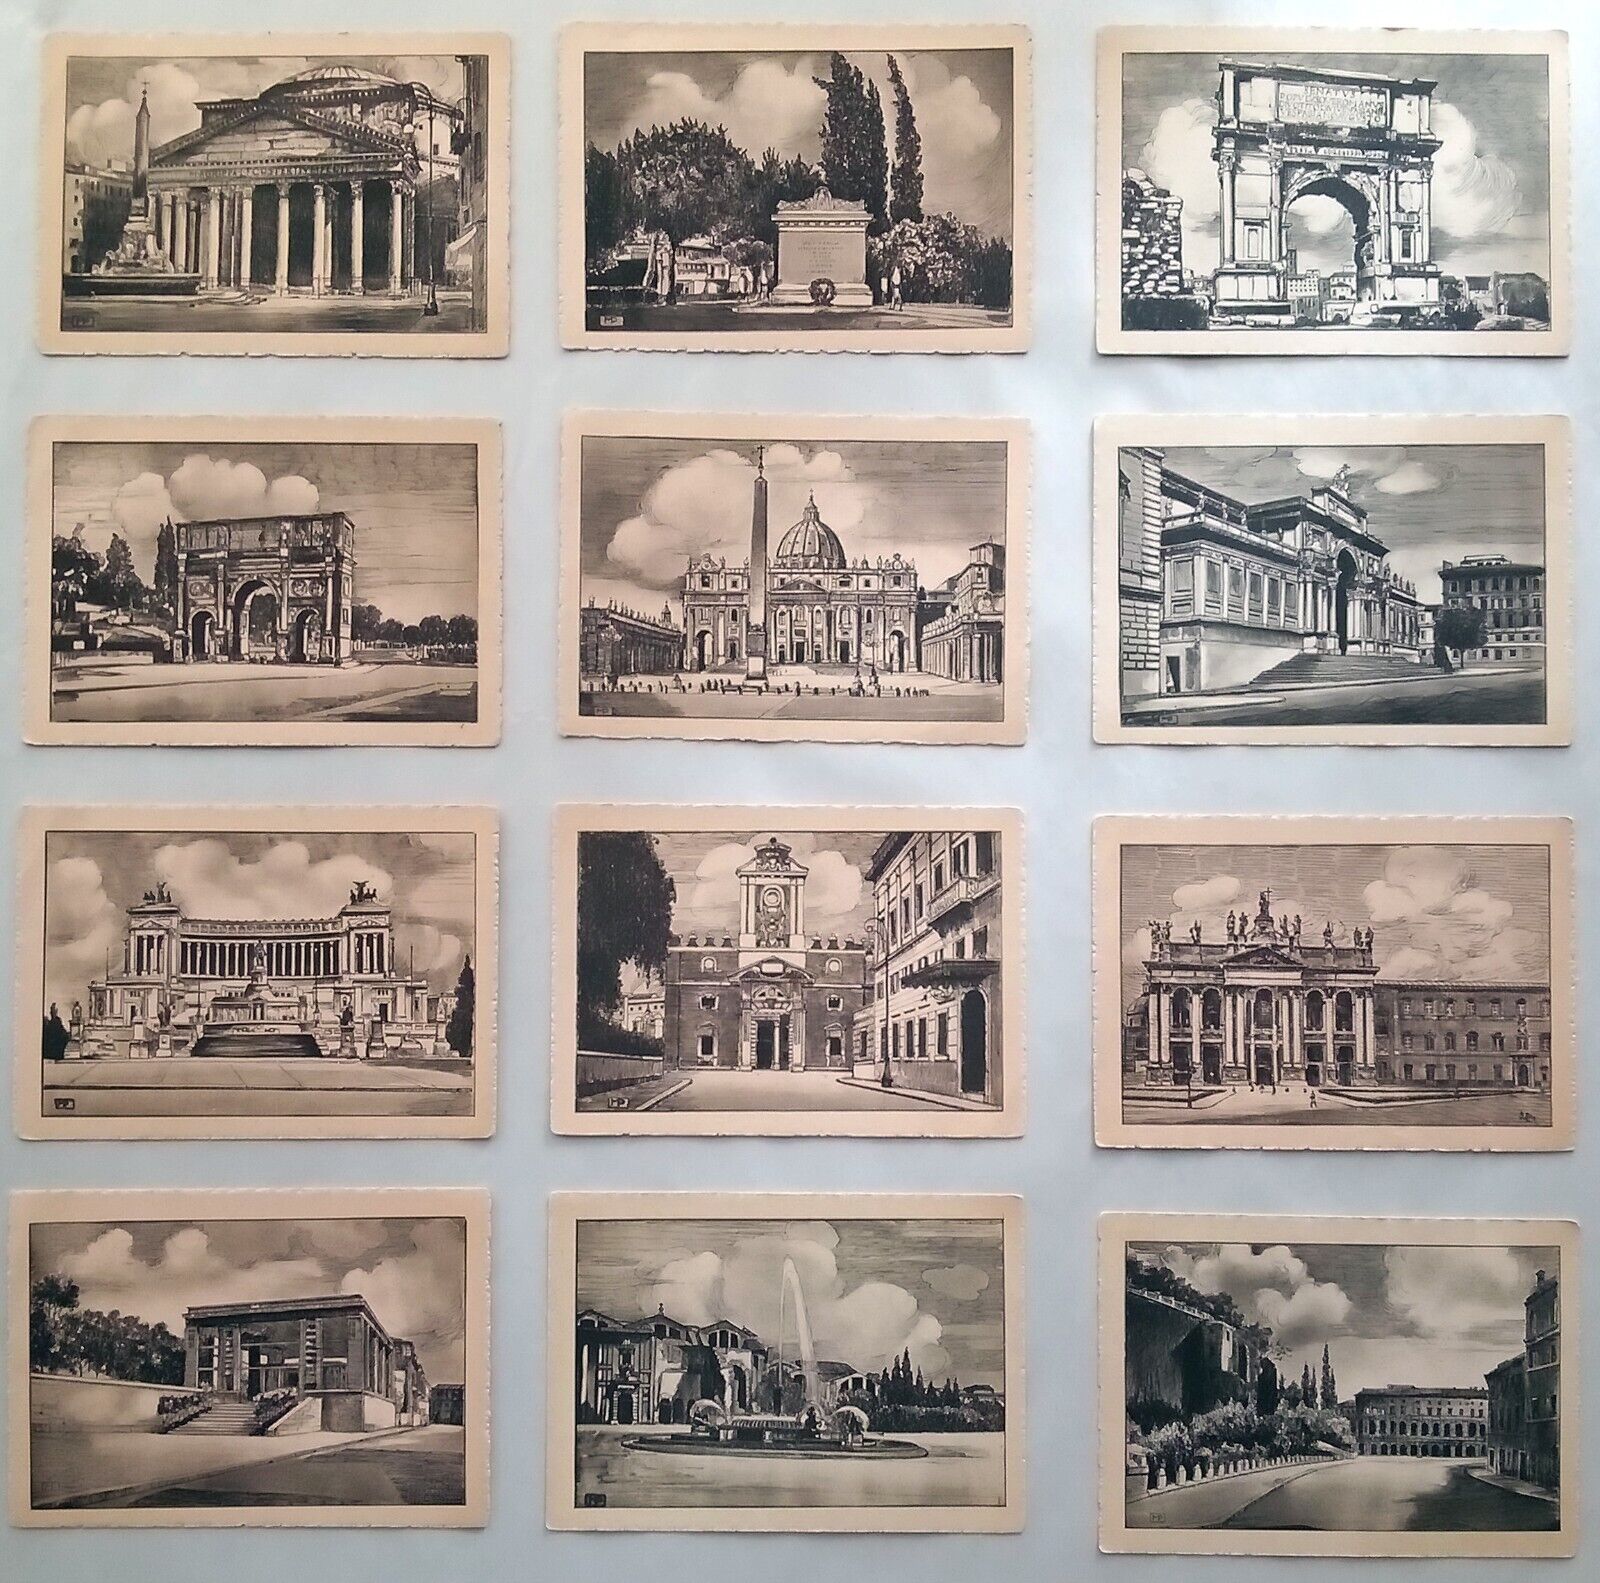 Italian ASER Postcard Collection Aldo Scarmiglia1930s-1940s Architecture Series 